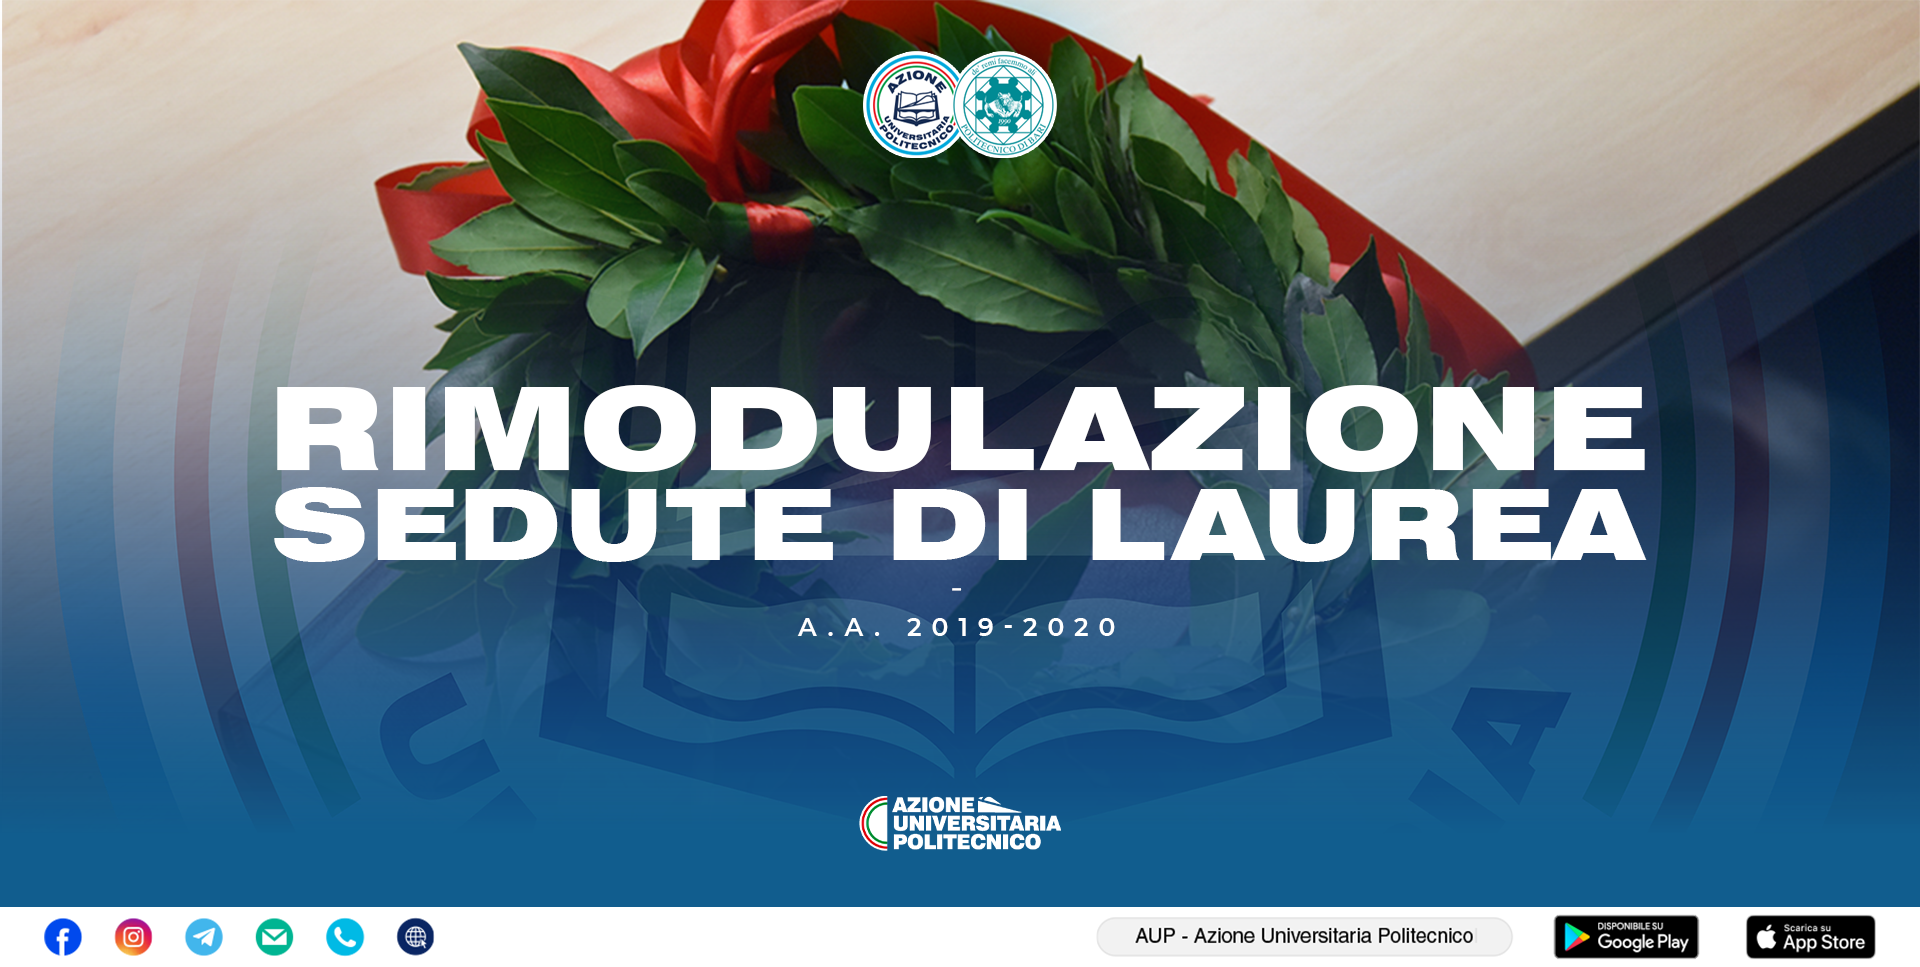 RIMODULAZIONE SEDUTE DI LAUREA A.A. 2019/20